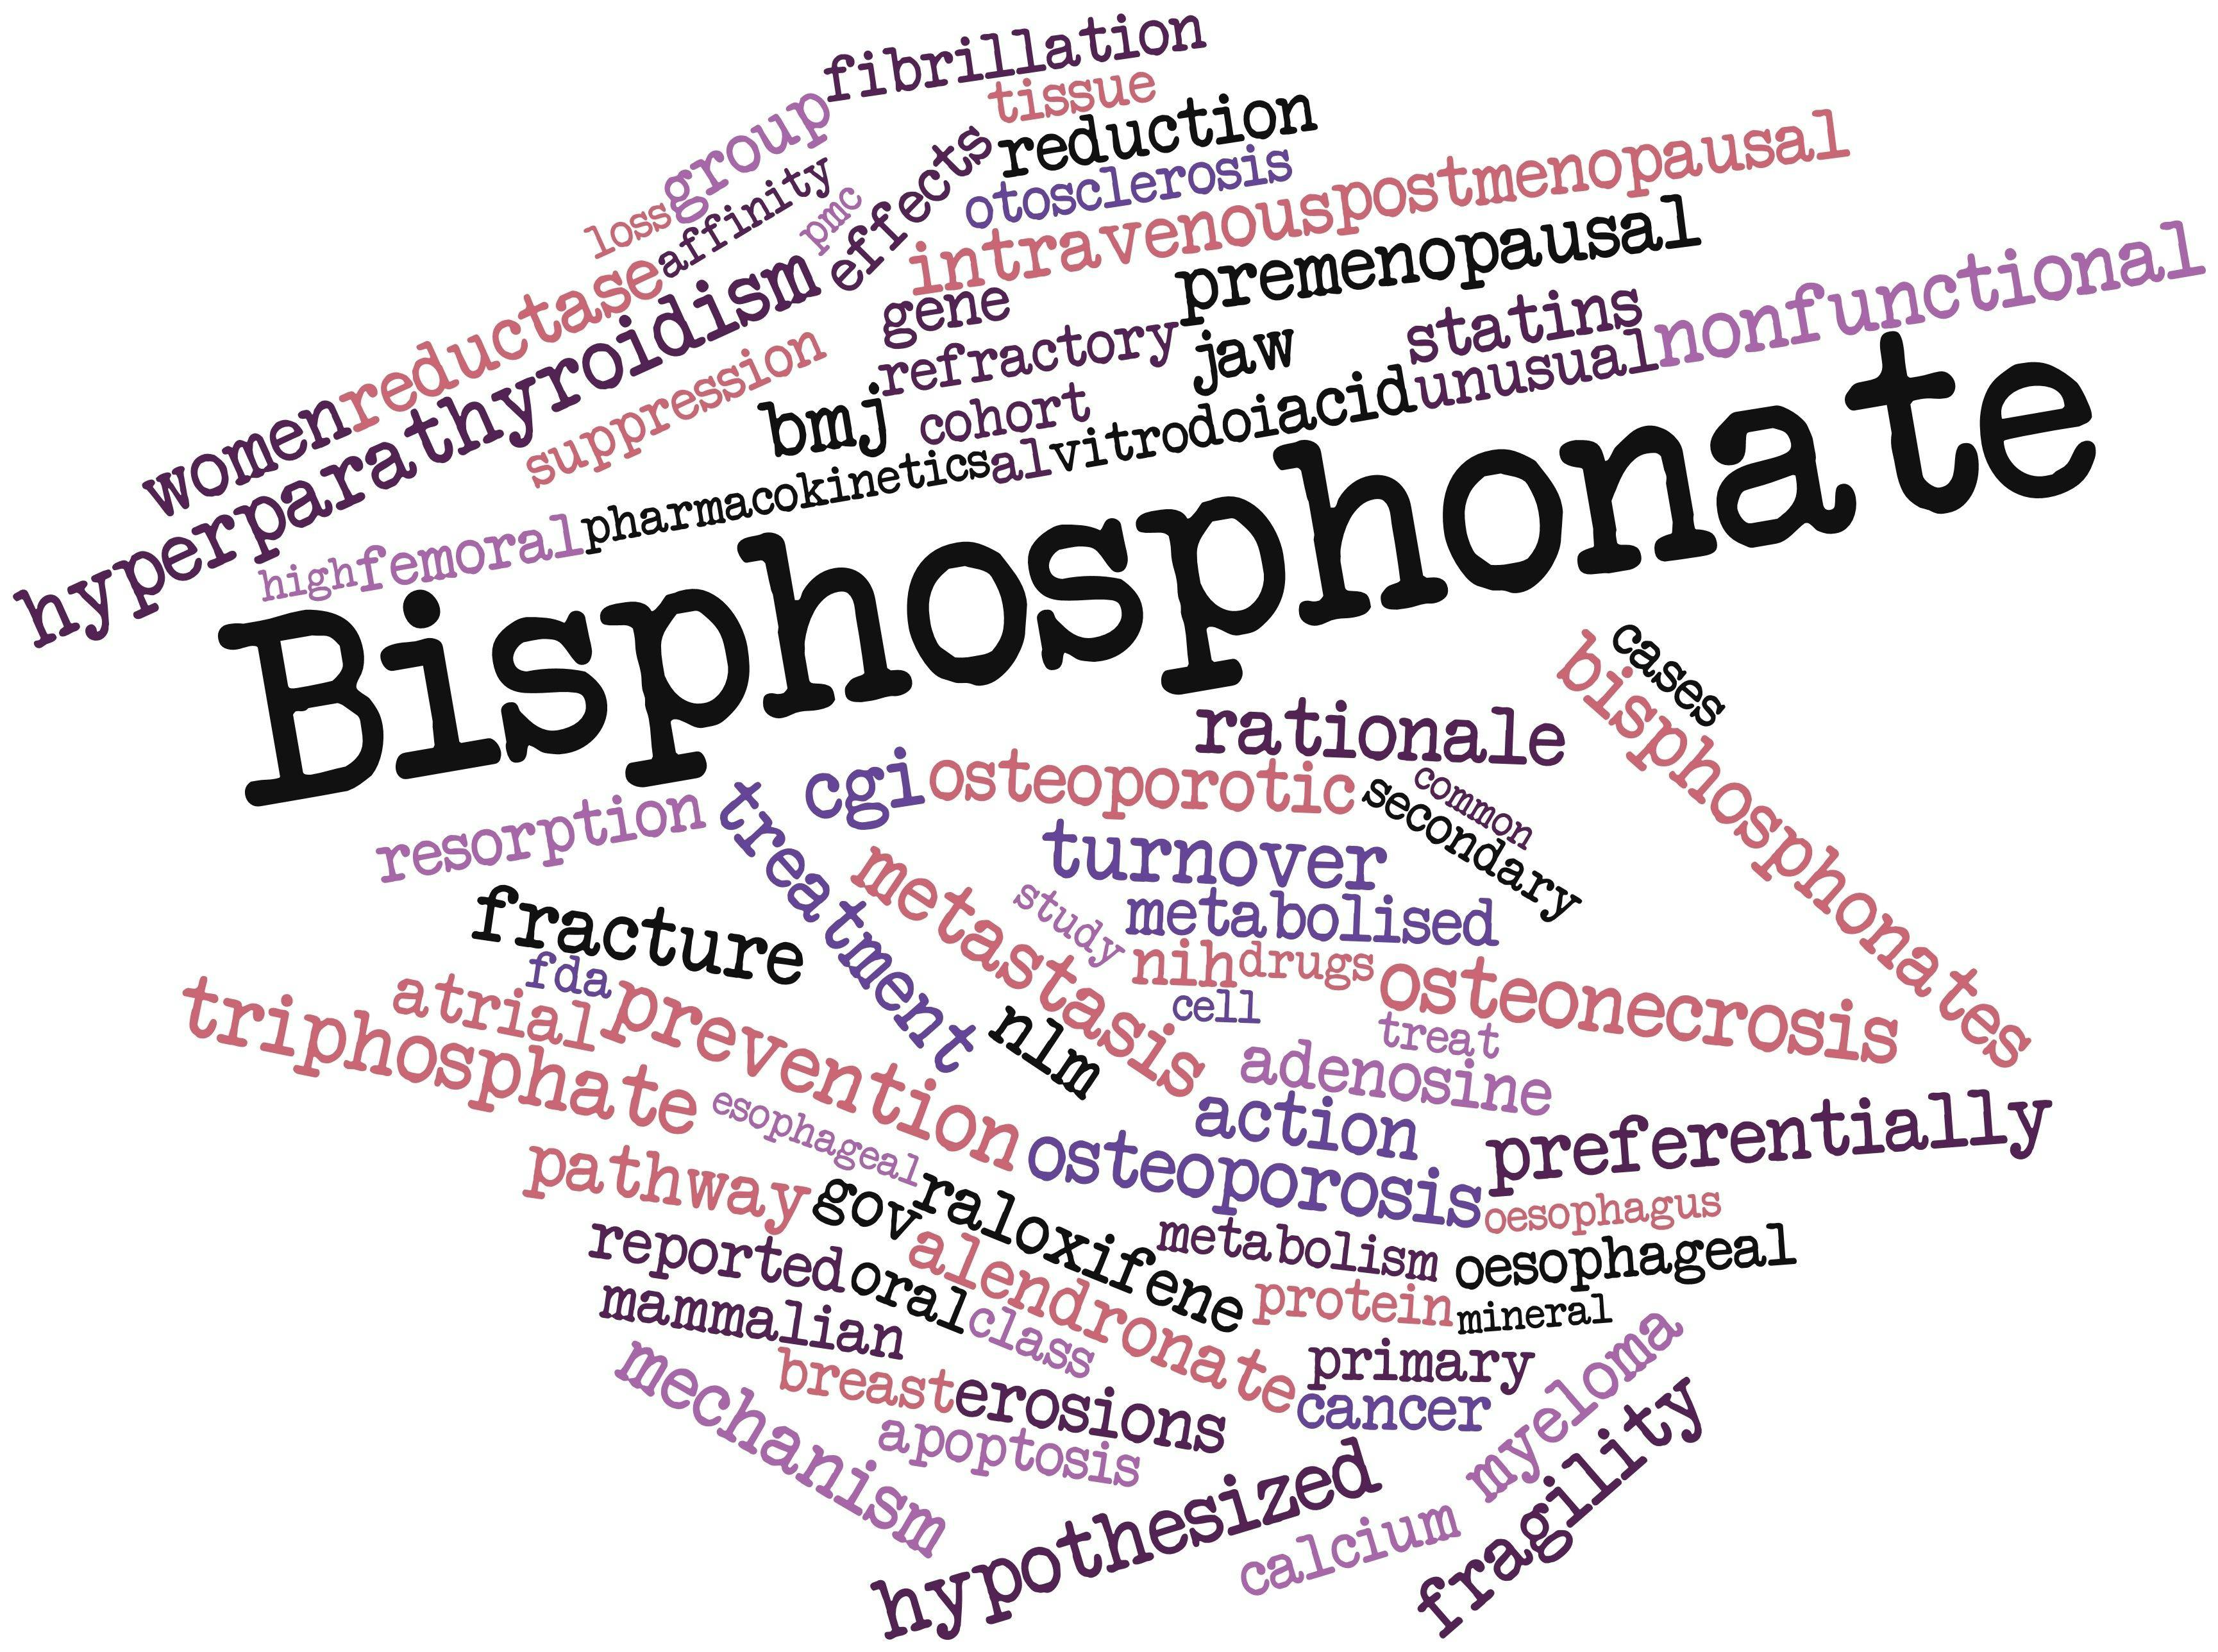 bisphosphonates